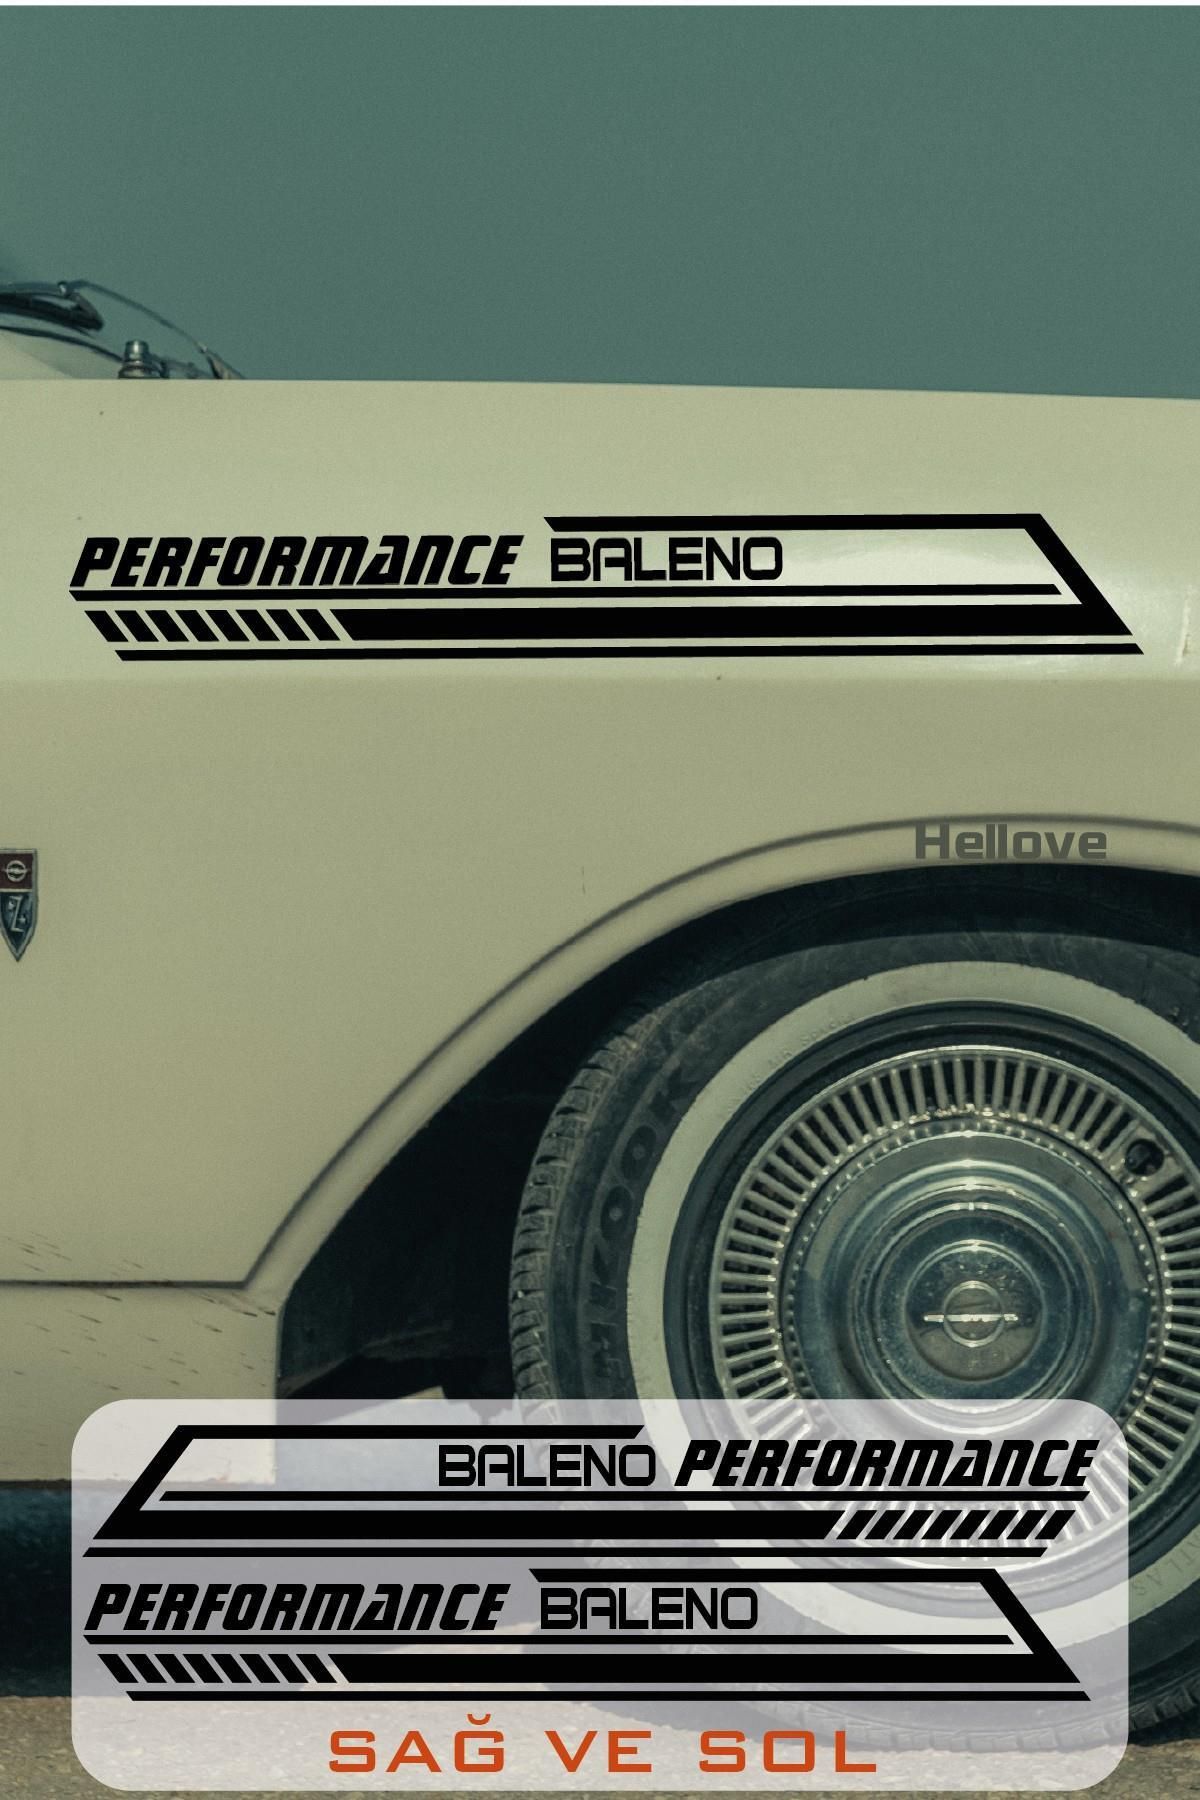 Hellove Suzuki Baleno Yan Şerit Performance Oto Araba Sticker Sağ ve Sol Siyah 55*16 Cm